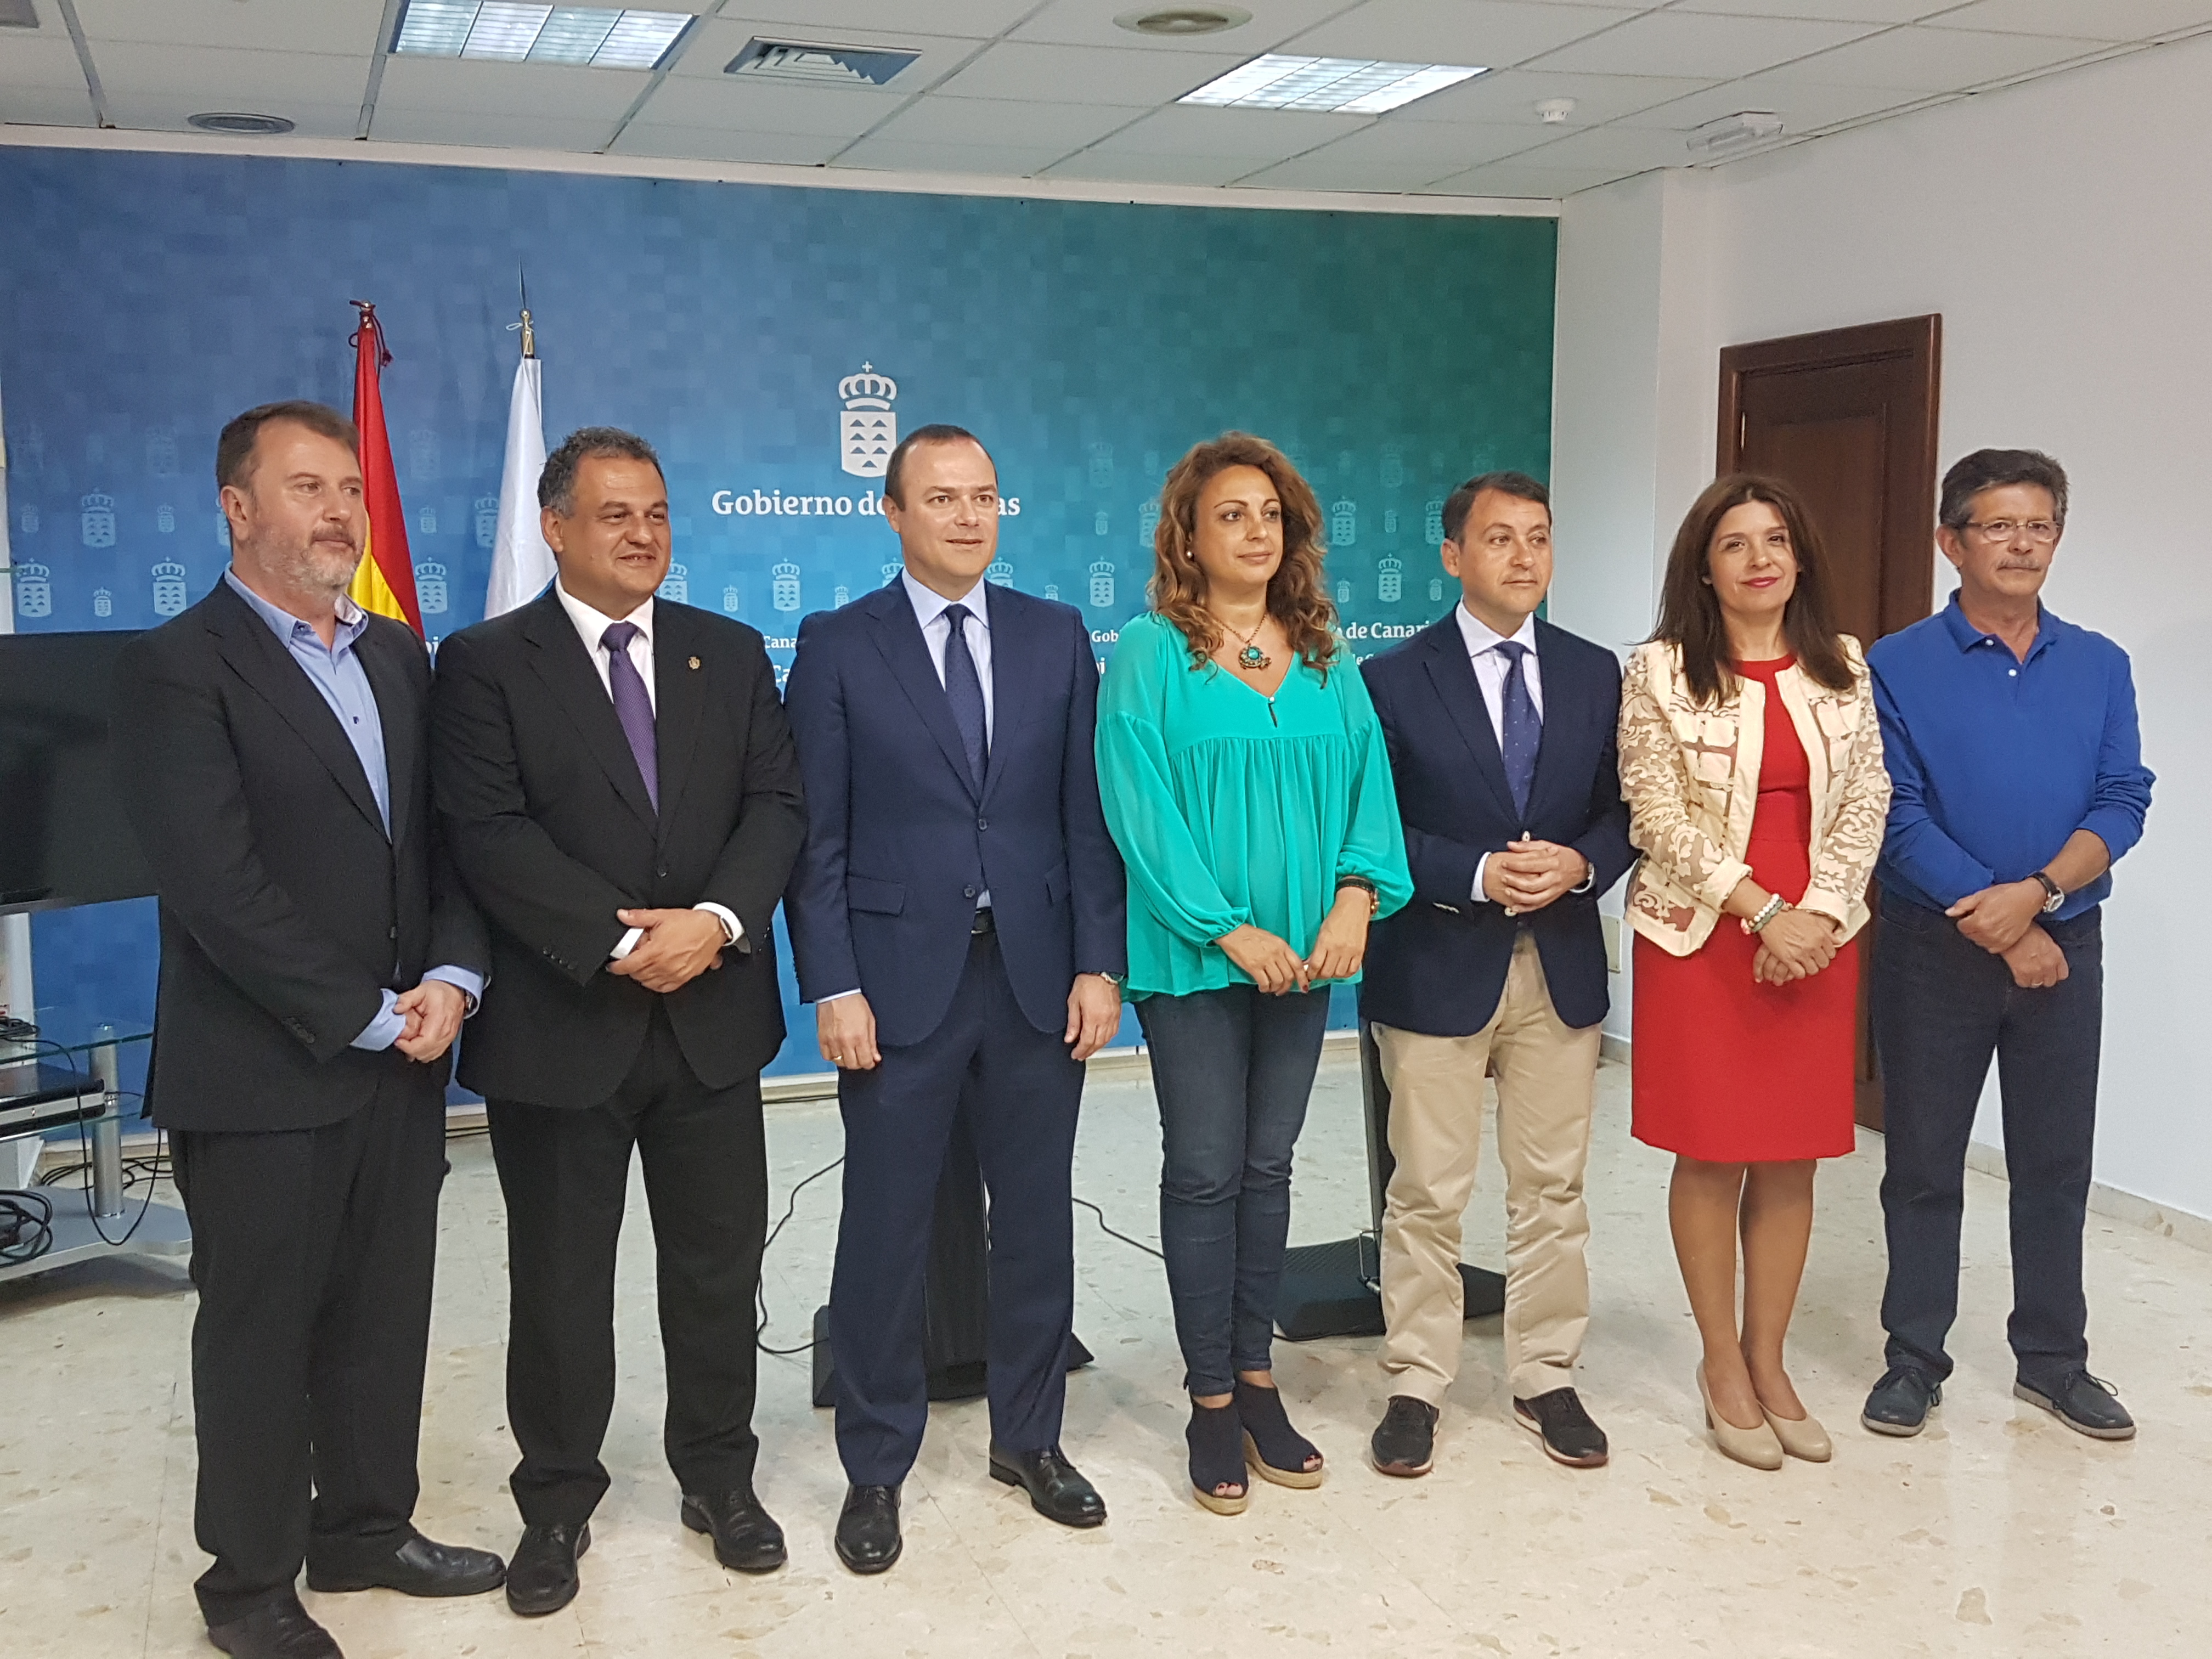 Alcaldes de Las Palmas de Gran Canaria, Telde, La Laguna, Santa Cruz de Tenerife con Cristina Valido